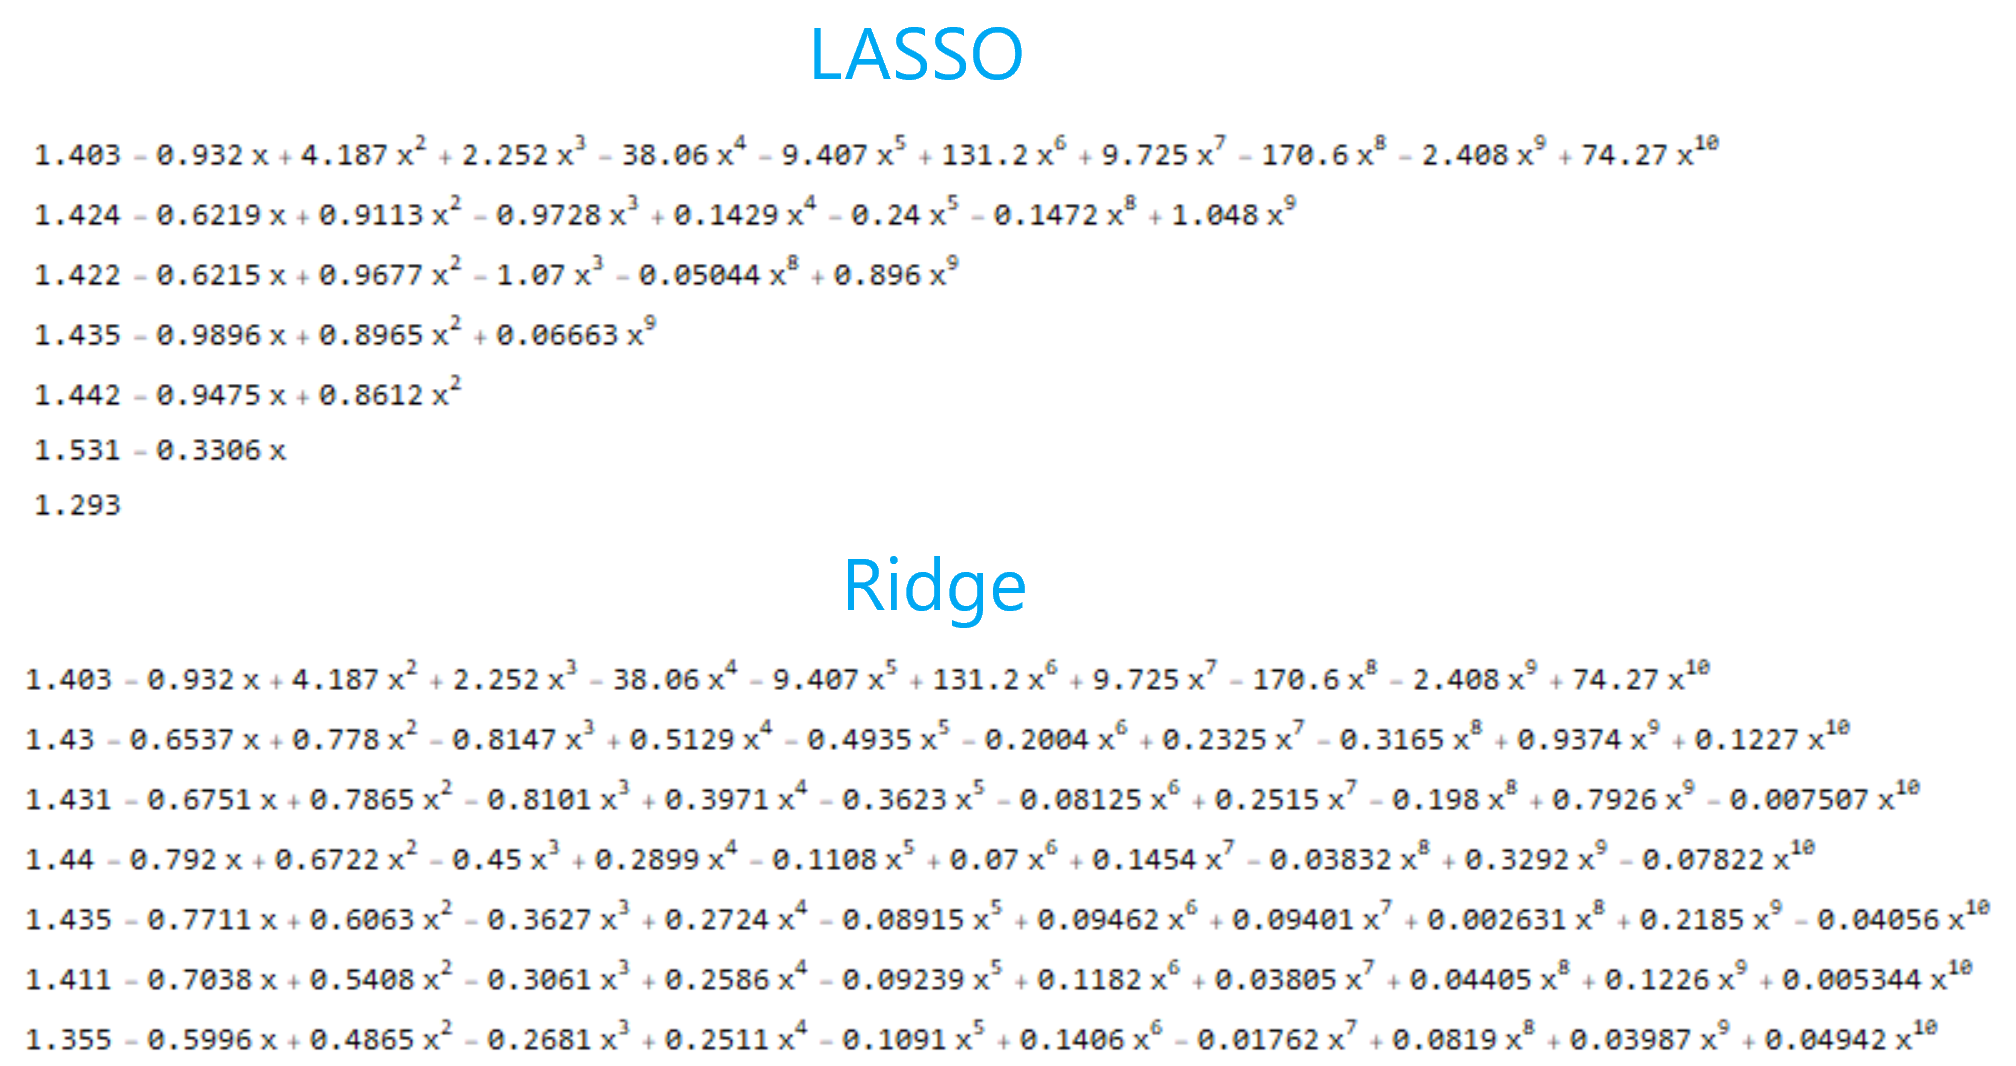 LASSO vs ridge regression